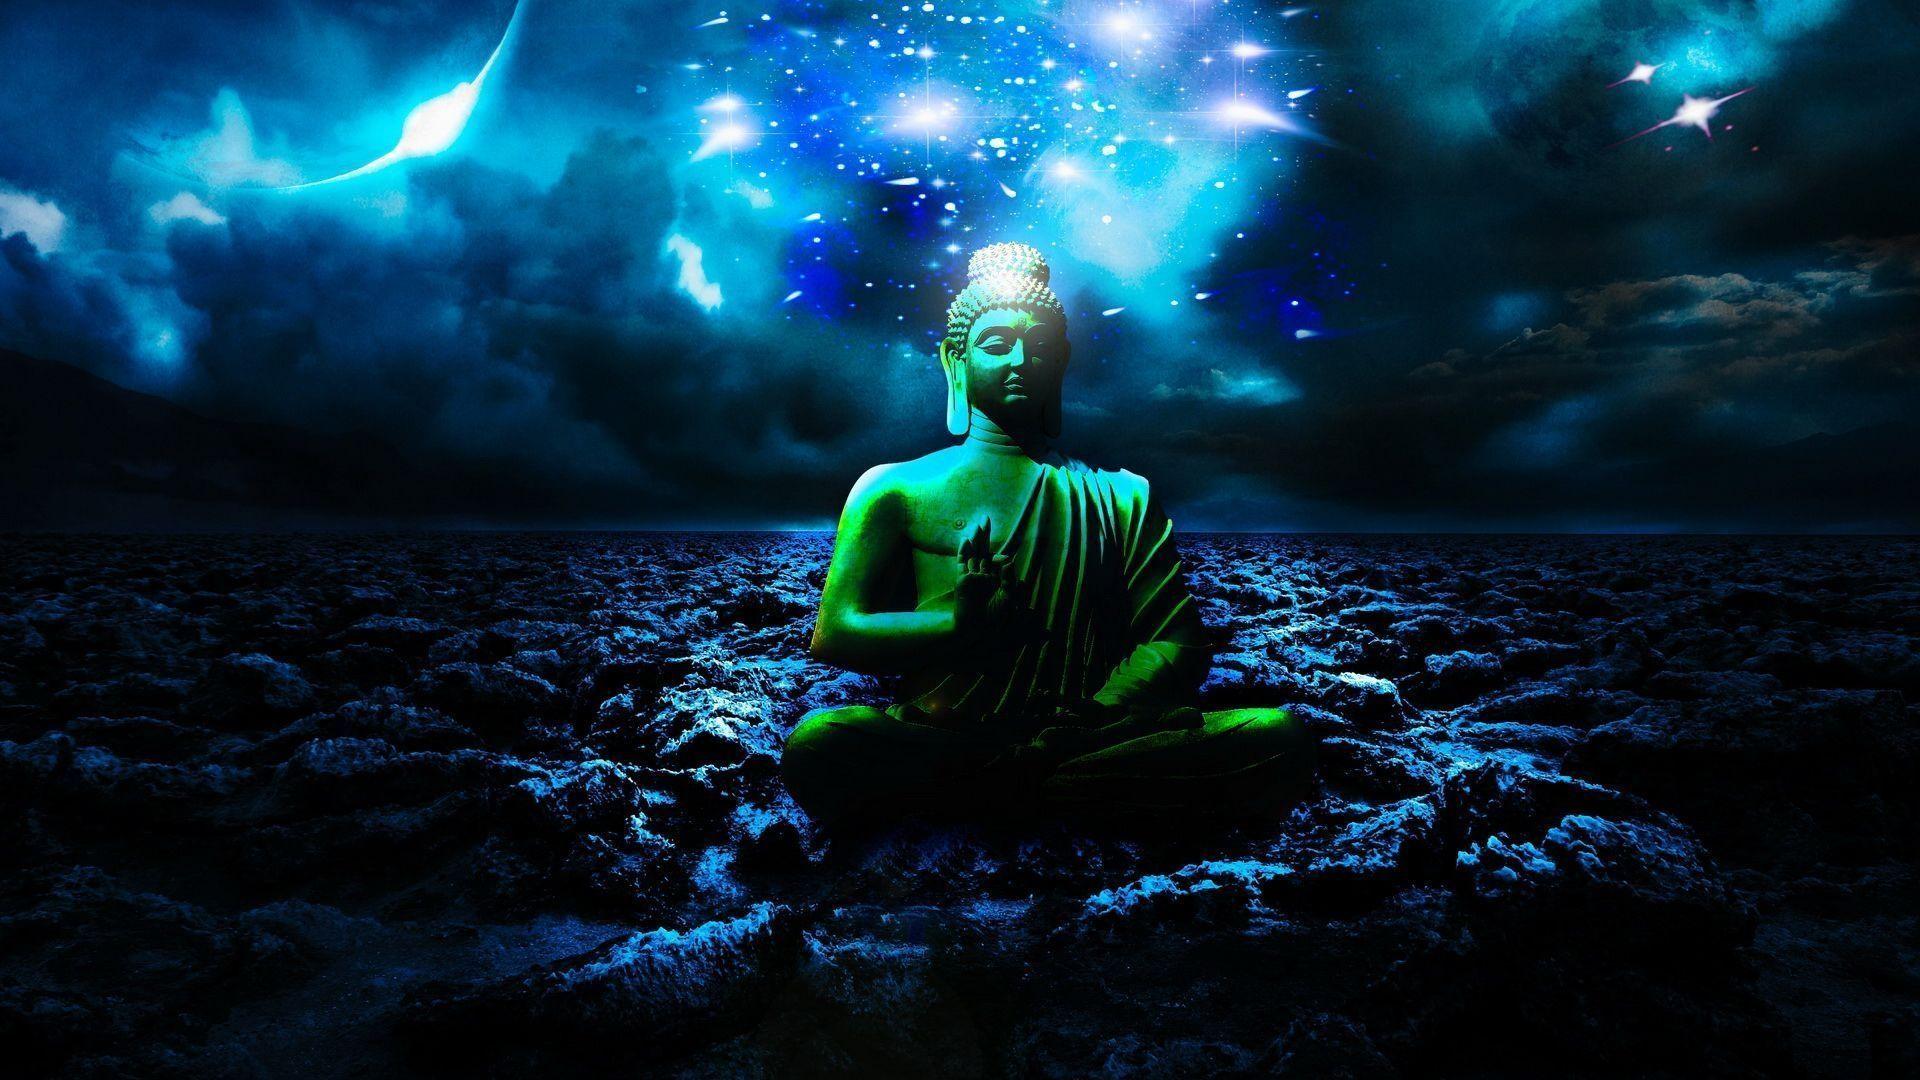 Tải hình ảnh Đức Phật xinh đẹp nhất làm hình nền máy tính  TRƯỜNG TRUNG  HỌC PHỔ THÔNG LƯƠNG VĂN CAN